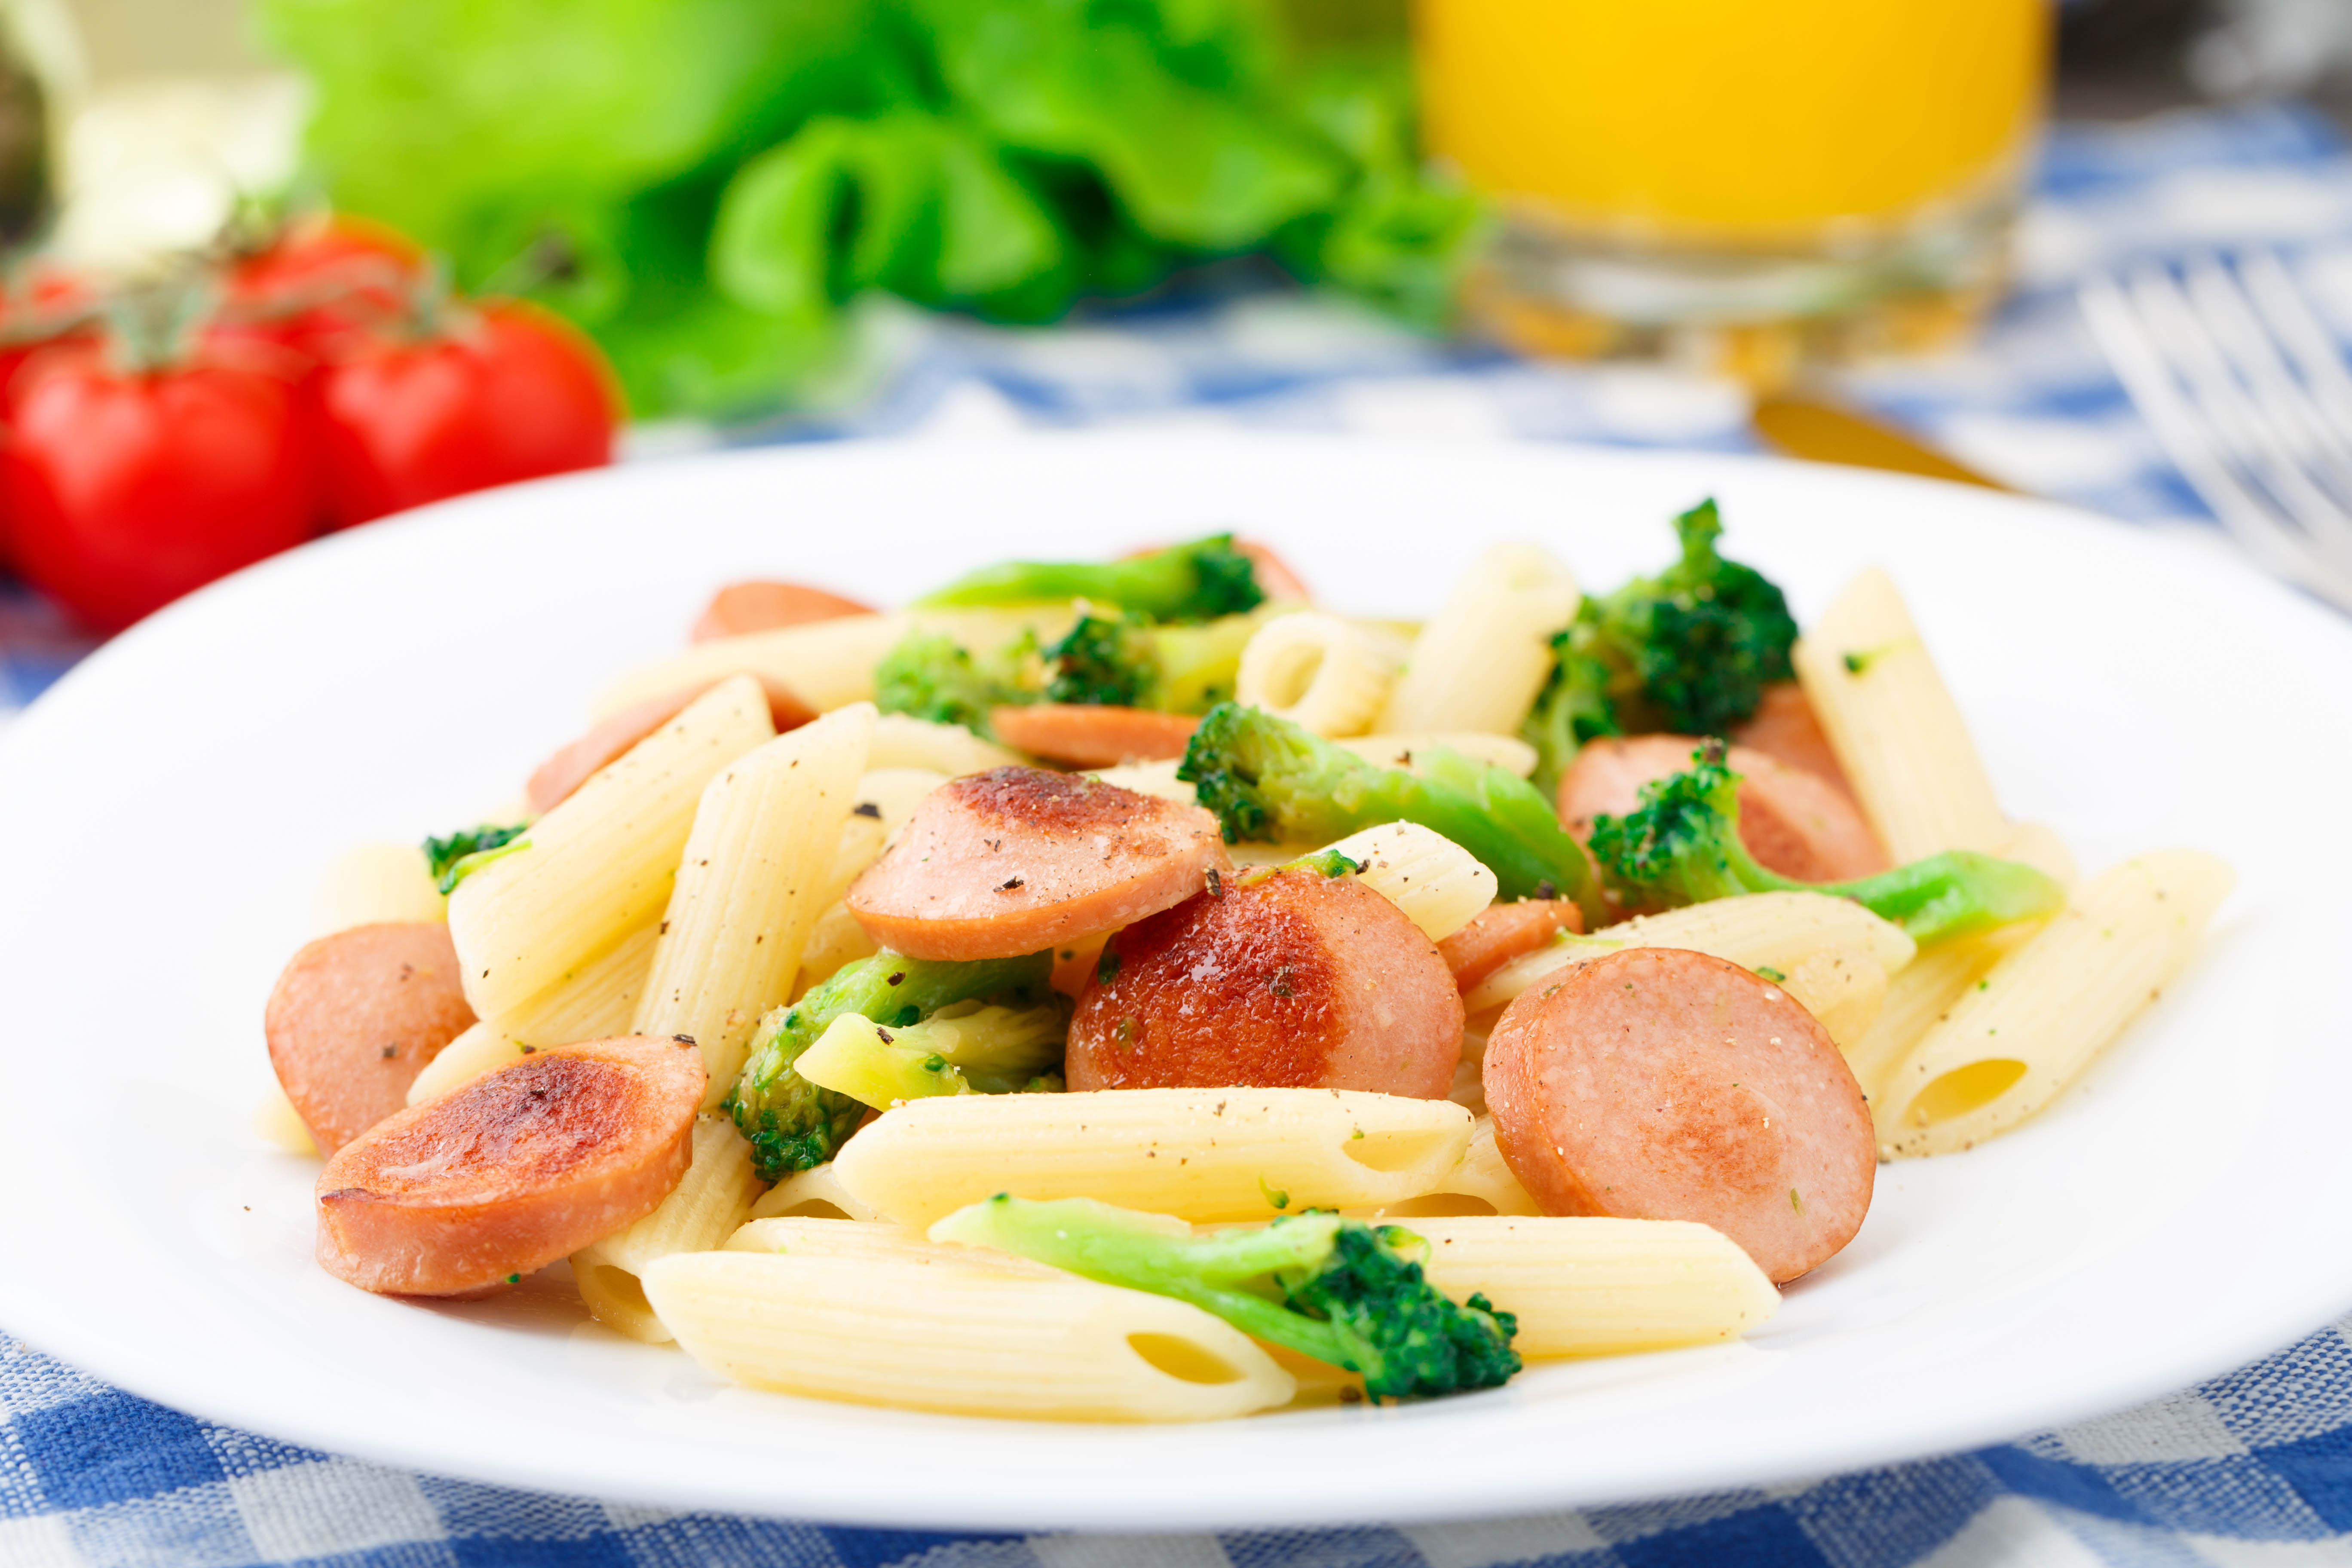 Macaroni with sausage and broccoli - La Pandi